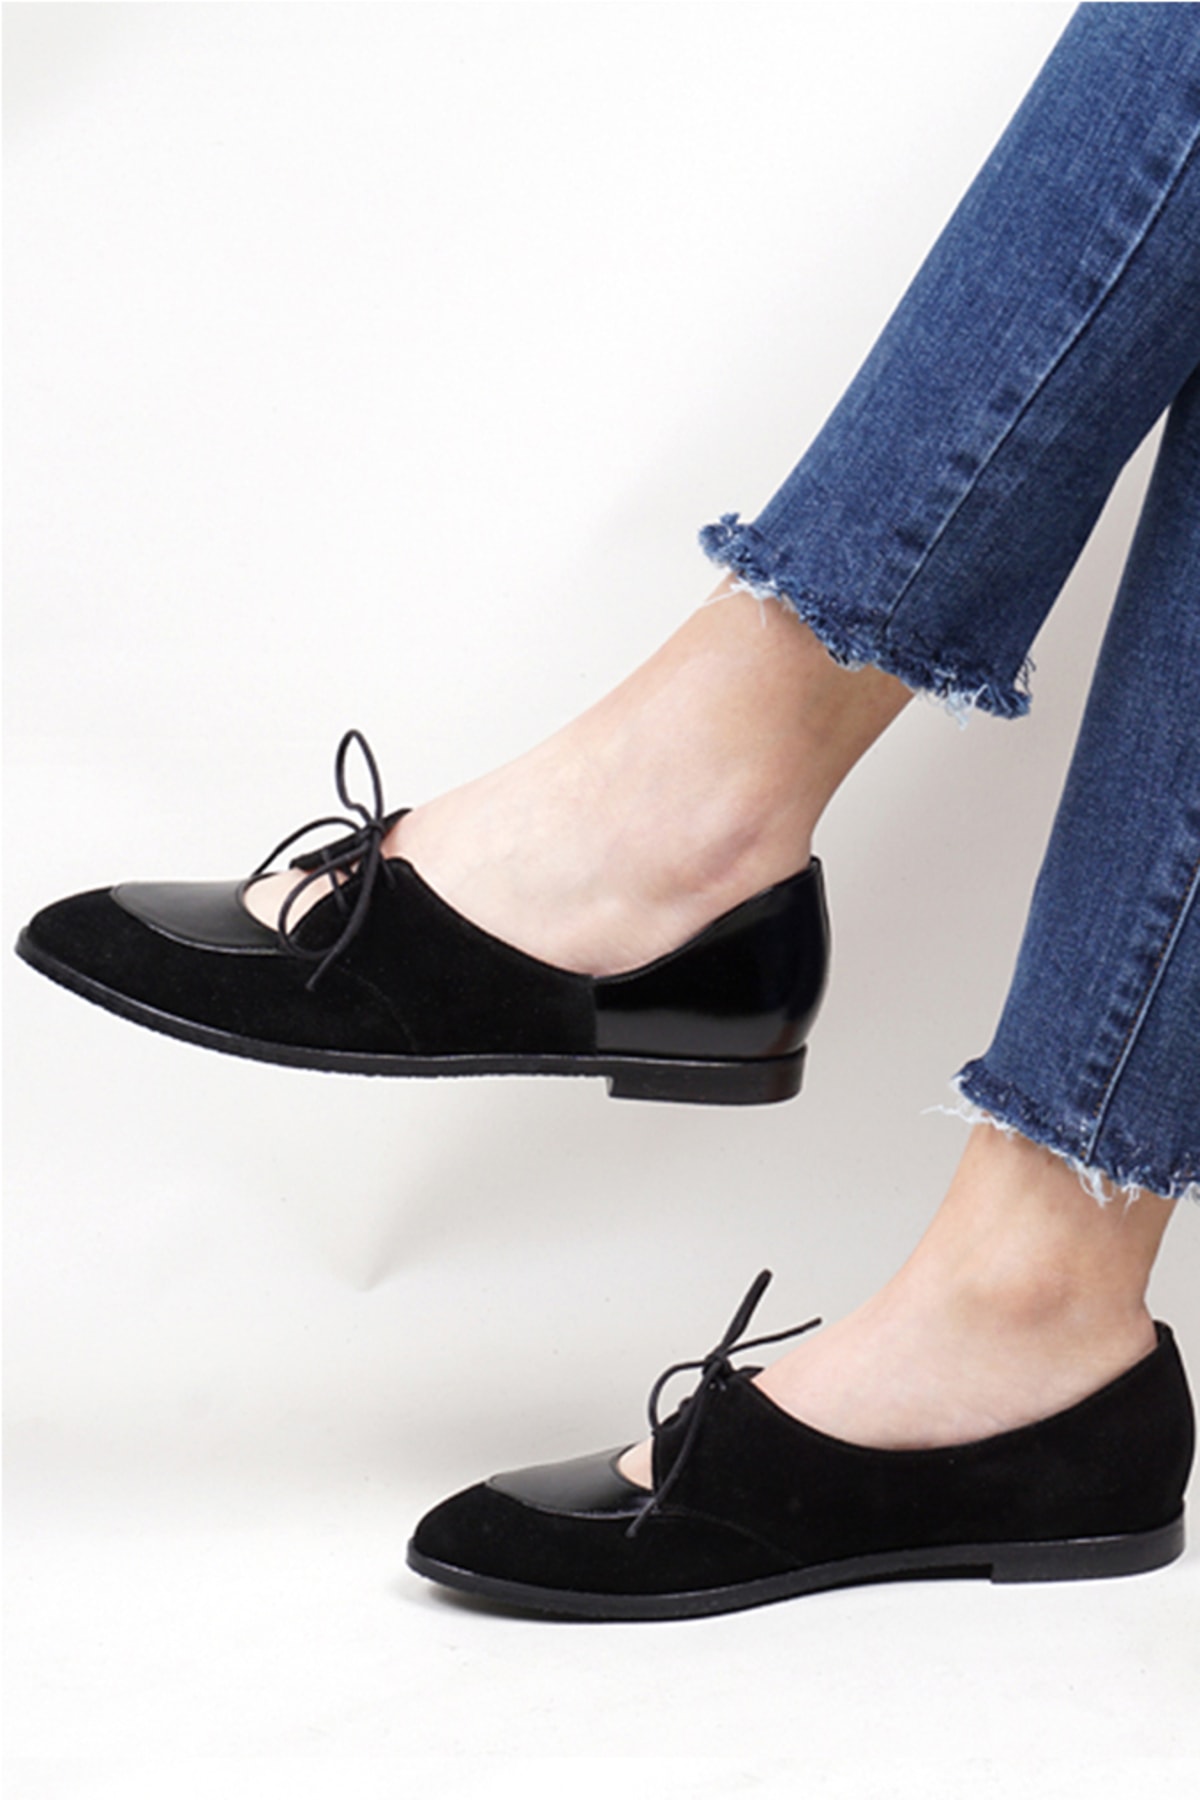 Lo Mejor Shoes Wenty Deri Özel Tasarım Kadın Babet Ayakkabı - Renk Süet Siyah OH10824